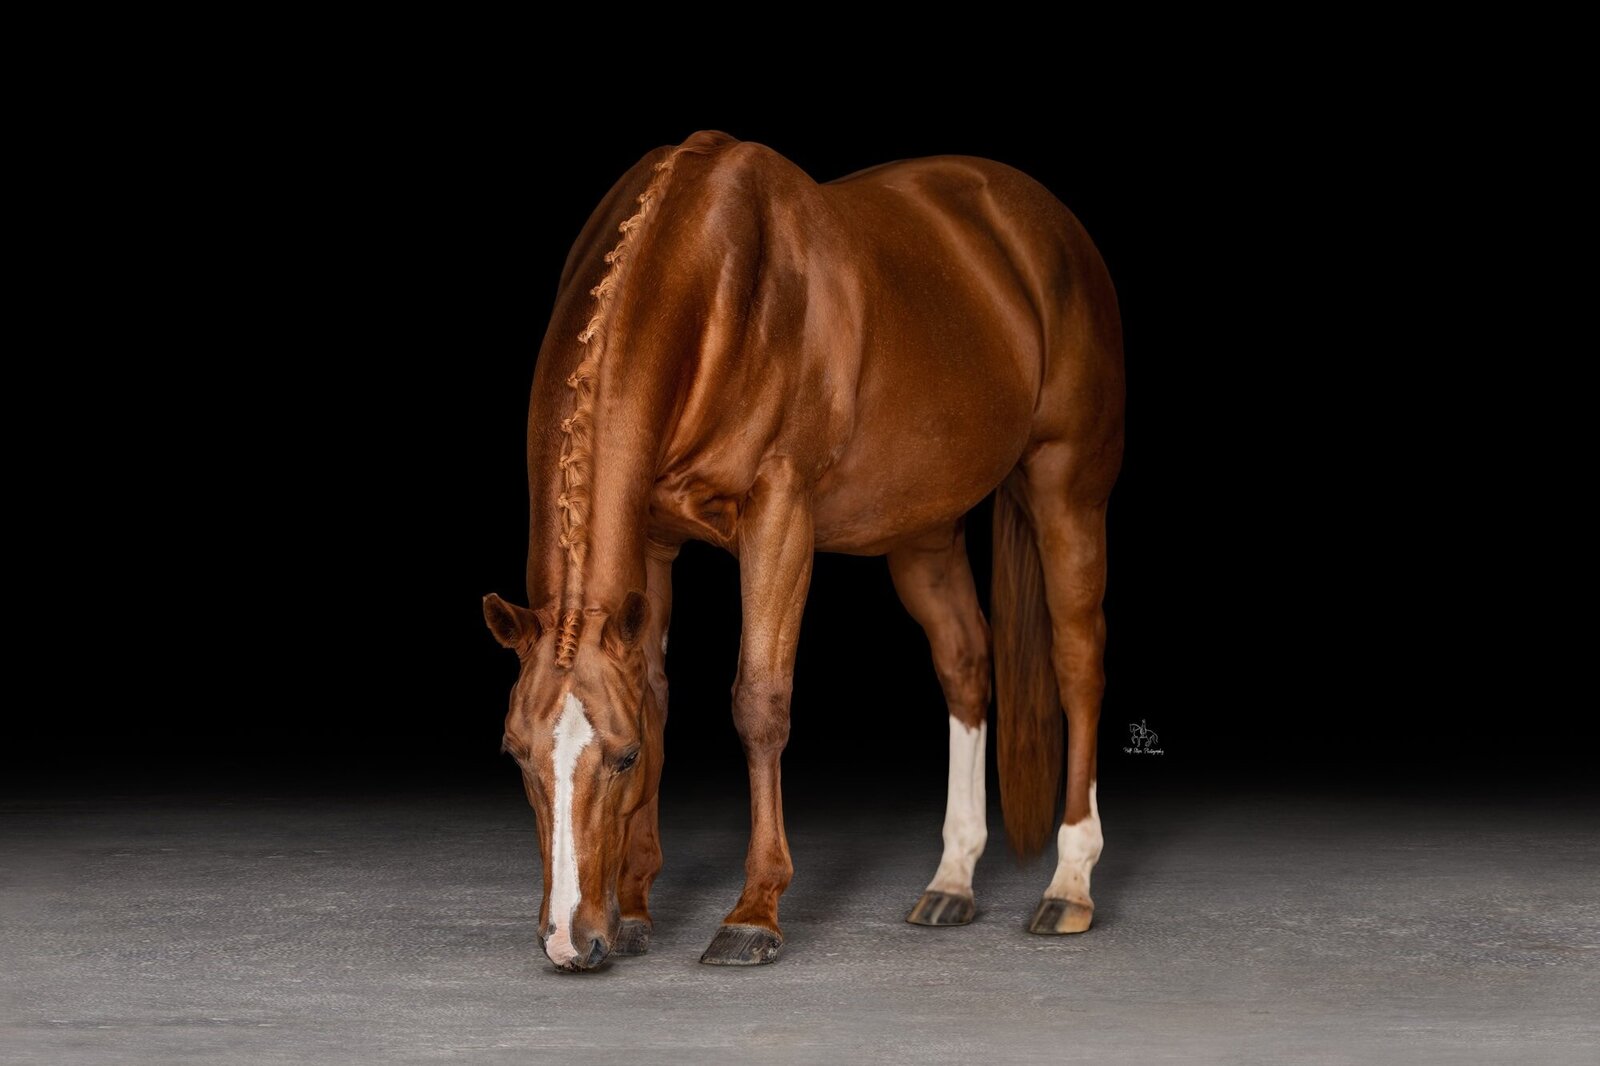 (3) Sydney plaited horse photoshoot